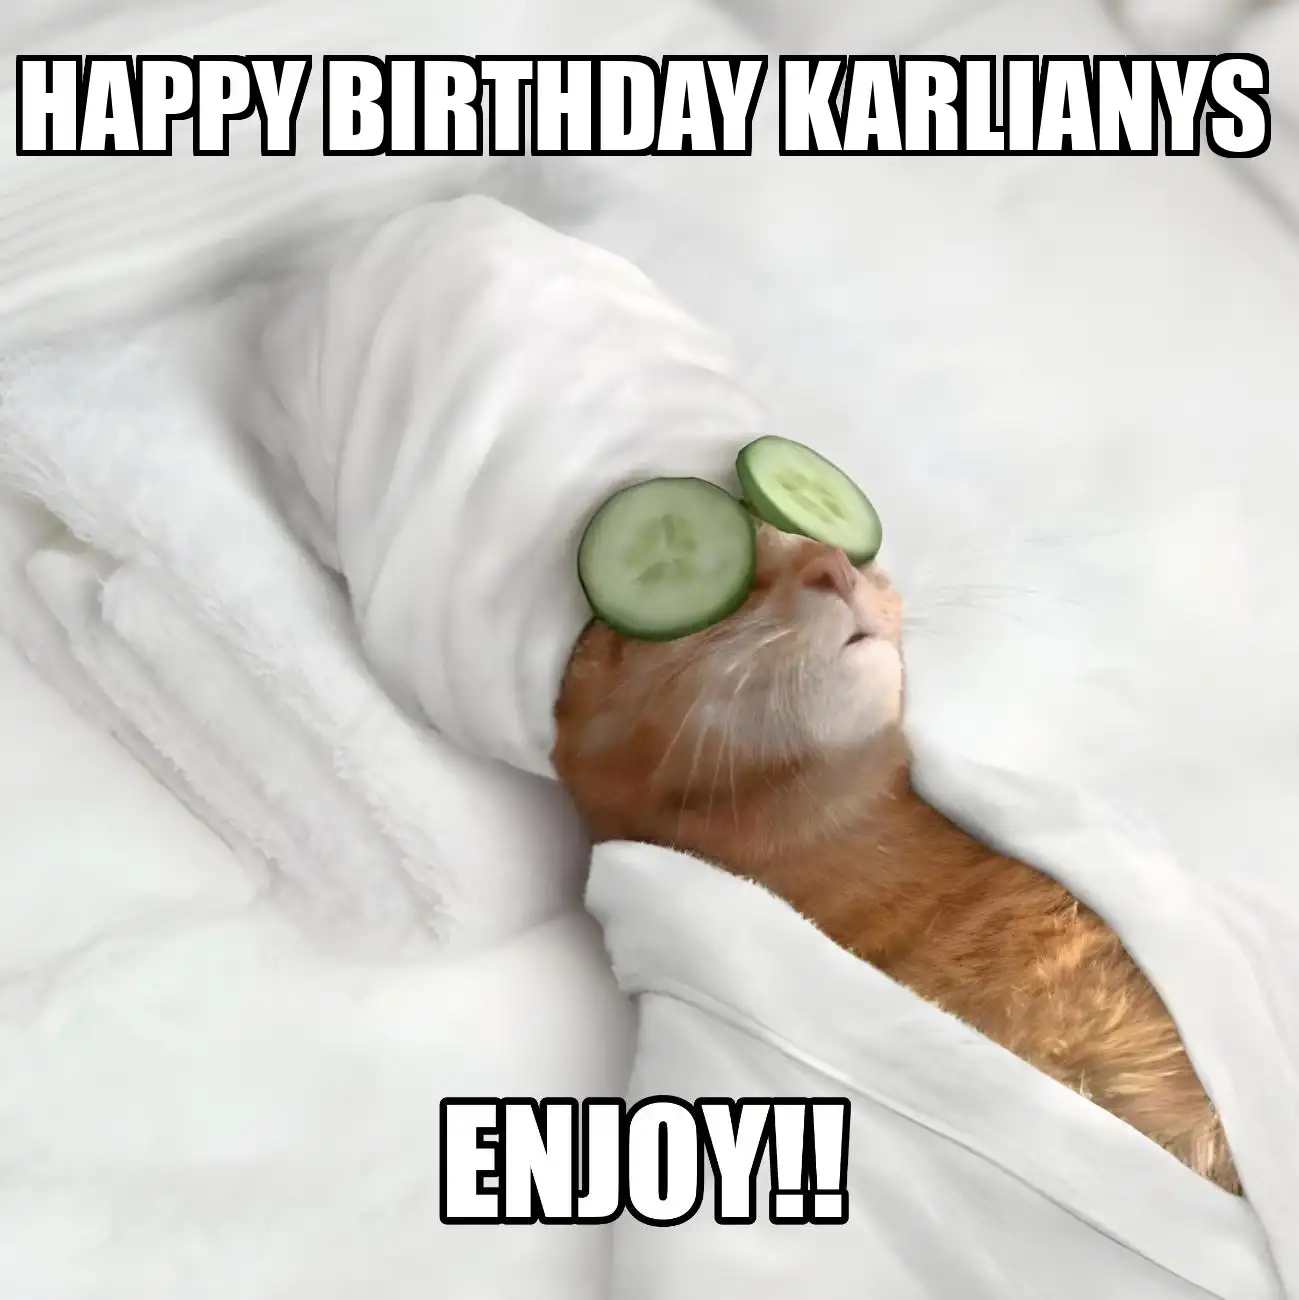 Happy Birthday Karlianys Enjoy Cat Meme